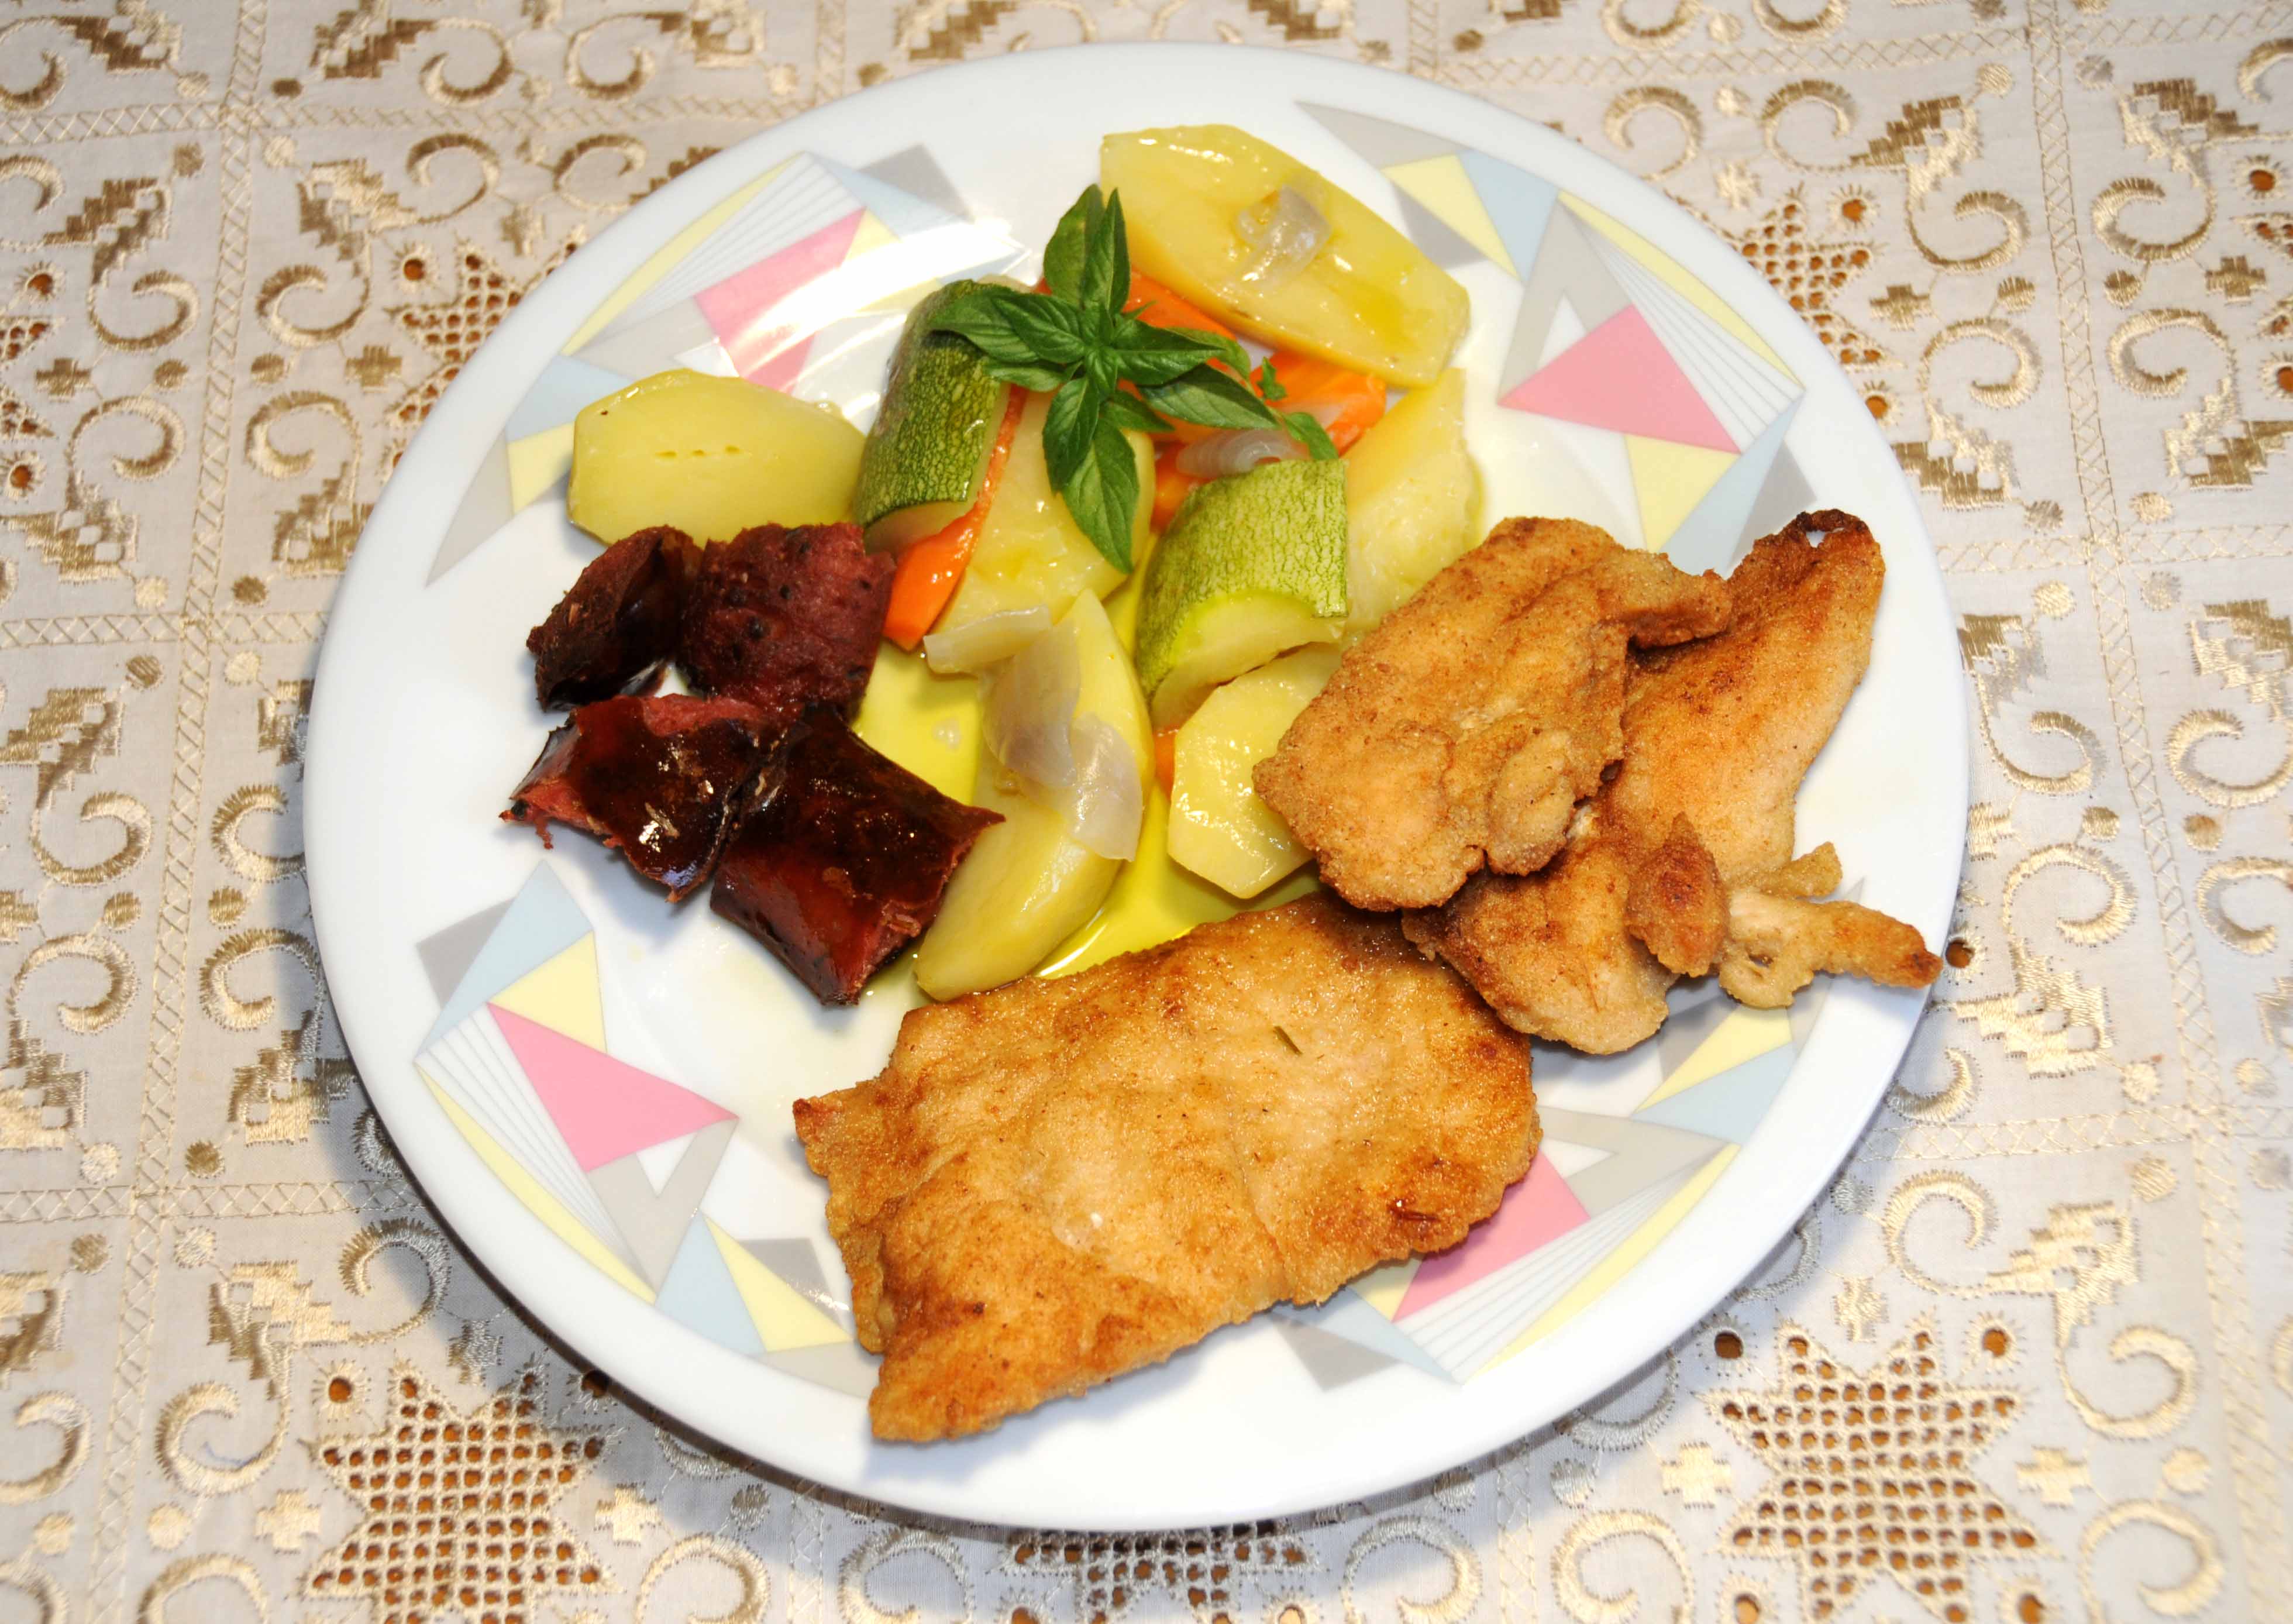 Σνίτσελ κοτόπουλου με πατατοσαλάτα - Chicken Schnitzel with potato salad